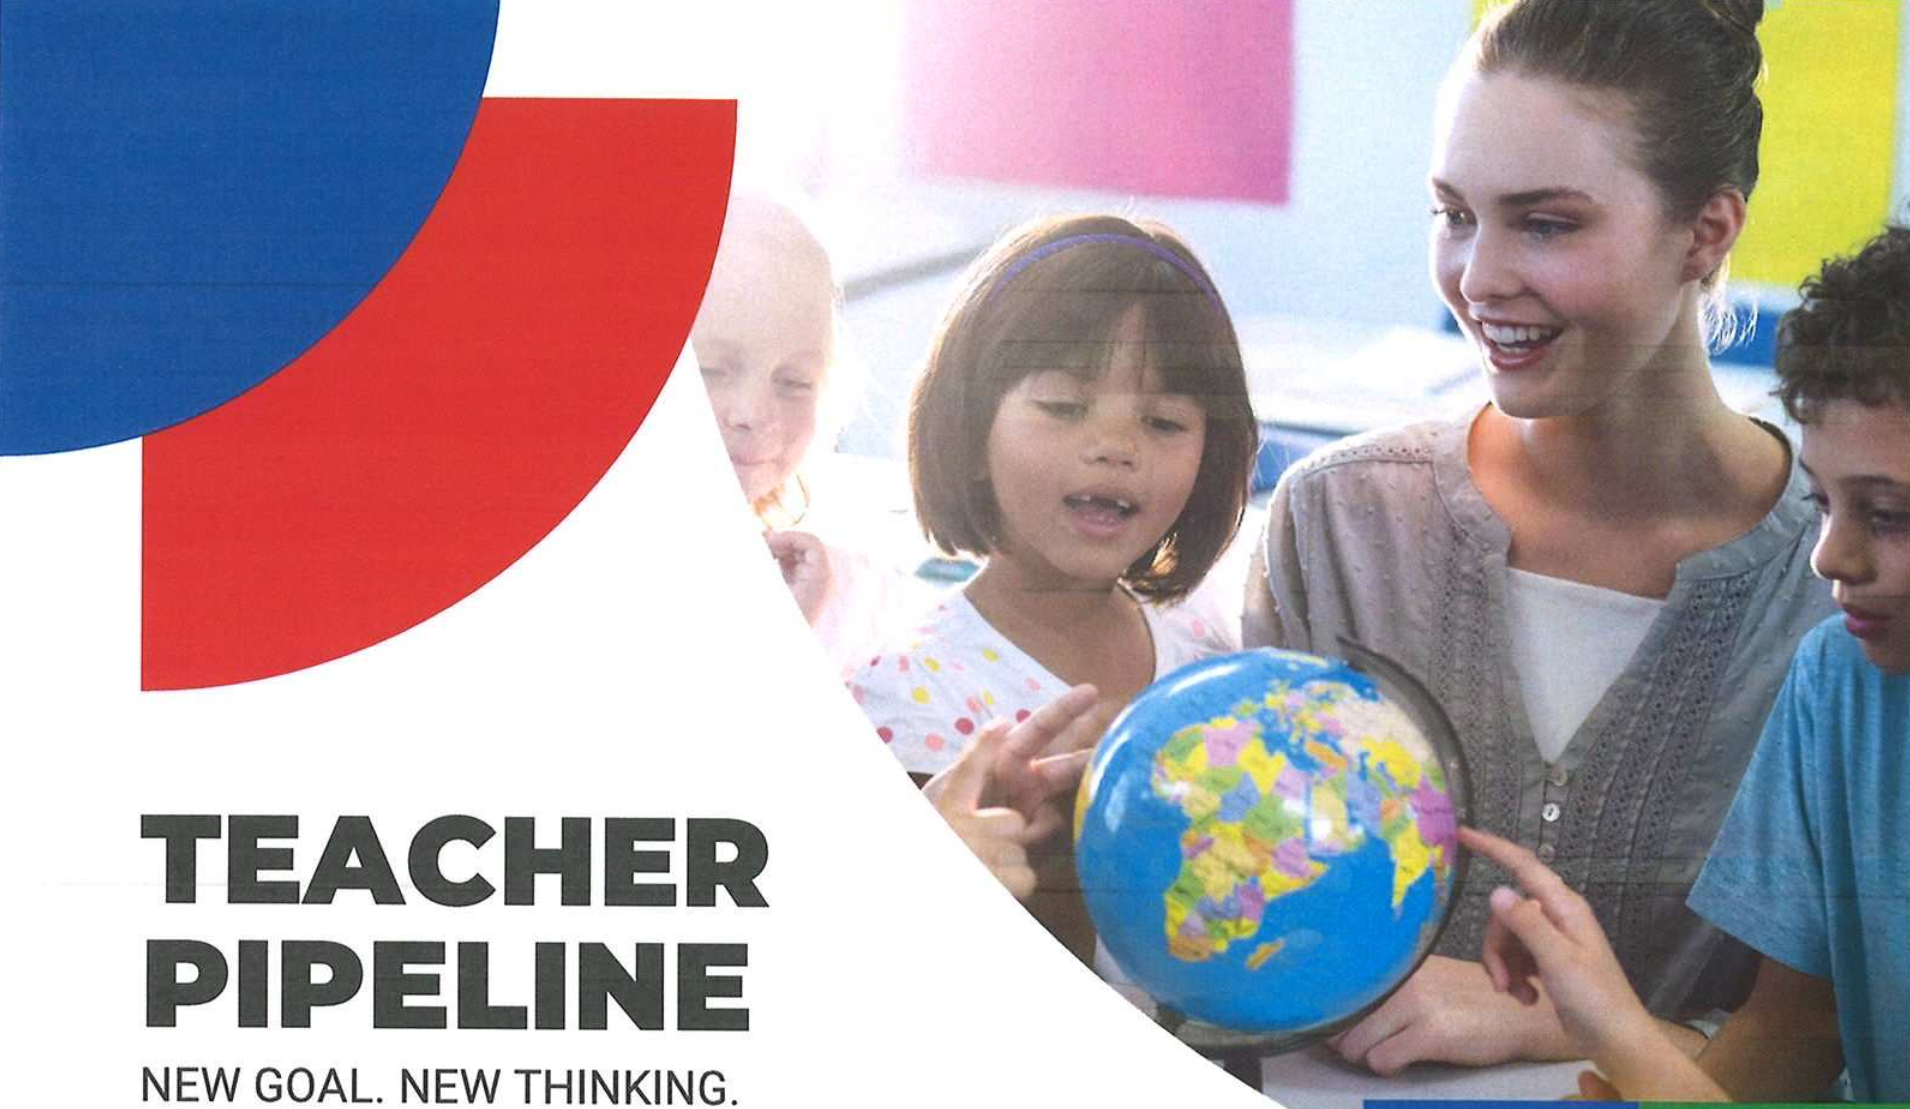 Teacher Pipeline - New Goal, New Thinking